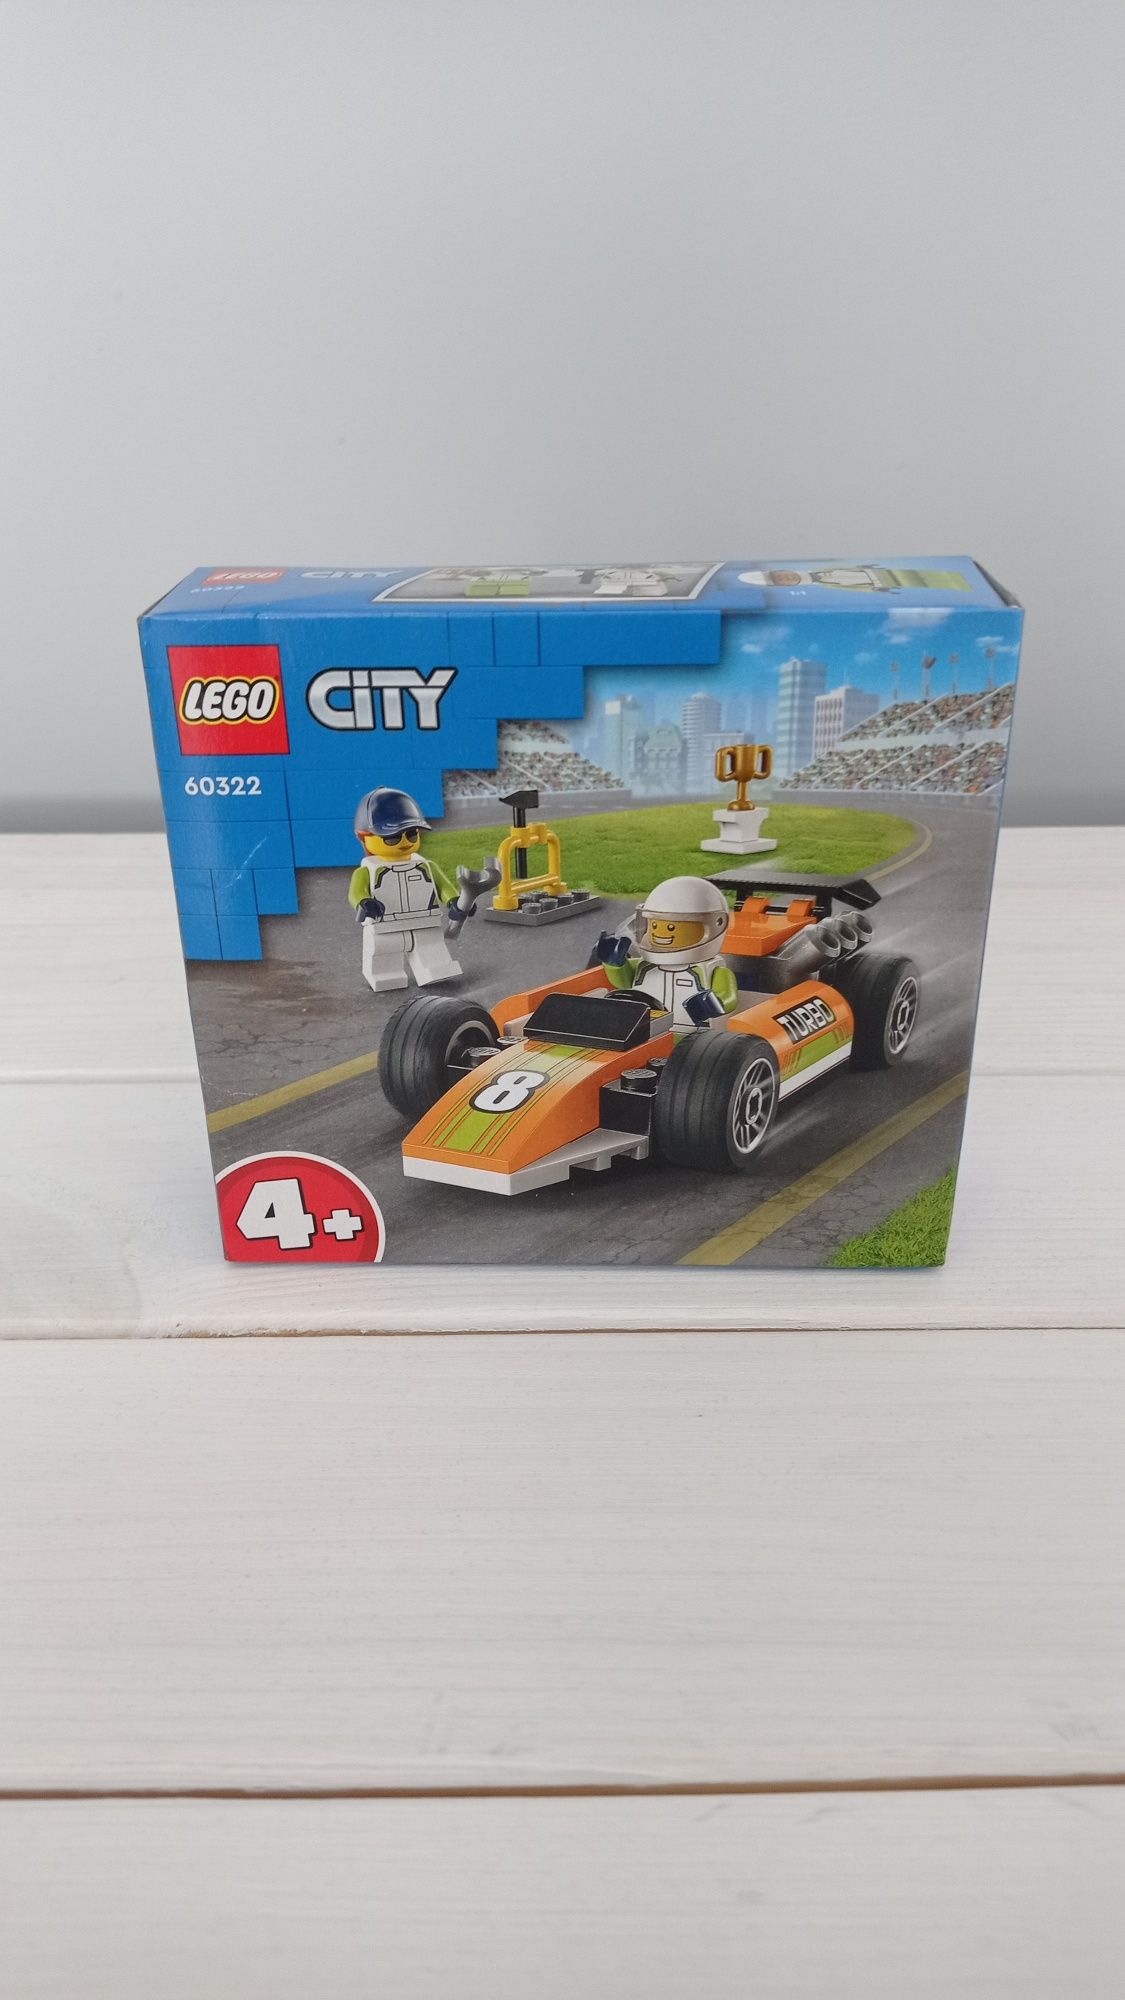 LEGO City 60322 - Samochód wyścigowy +4 nowy, prezent, urodziny MiSB